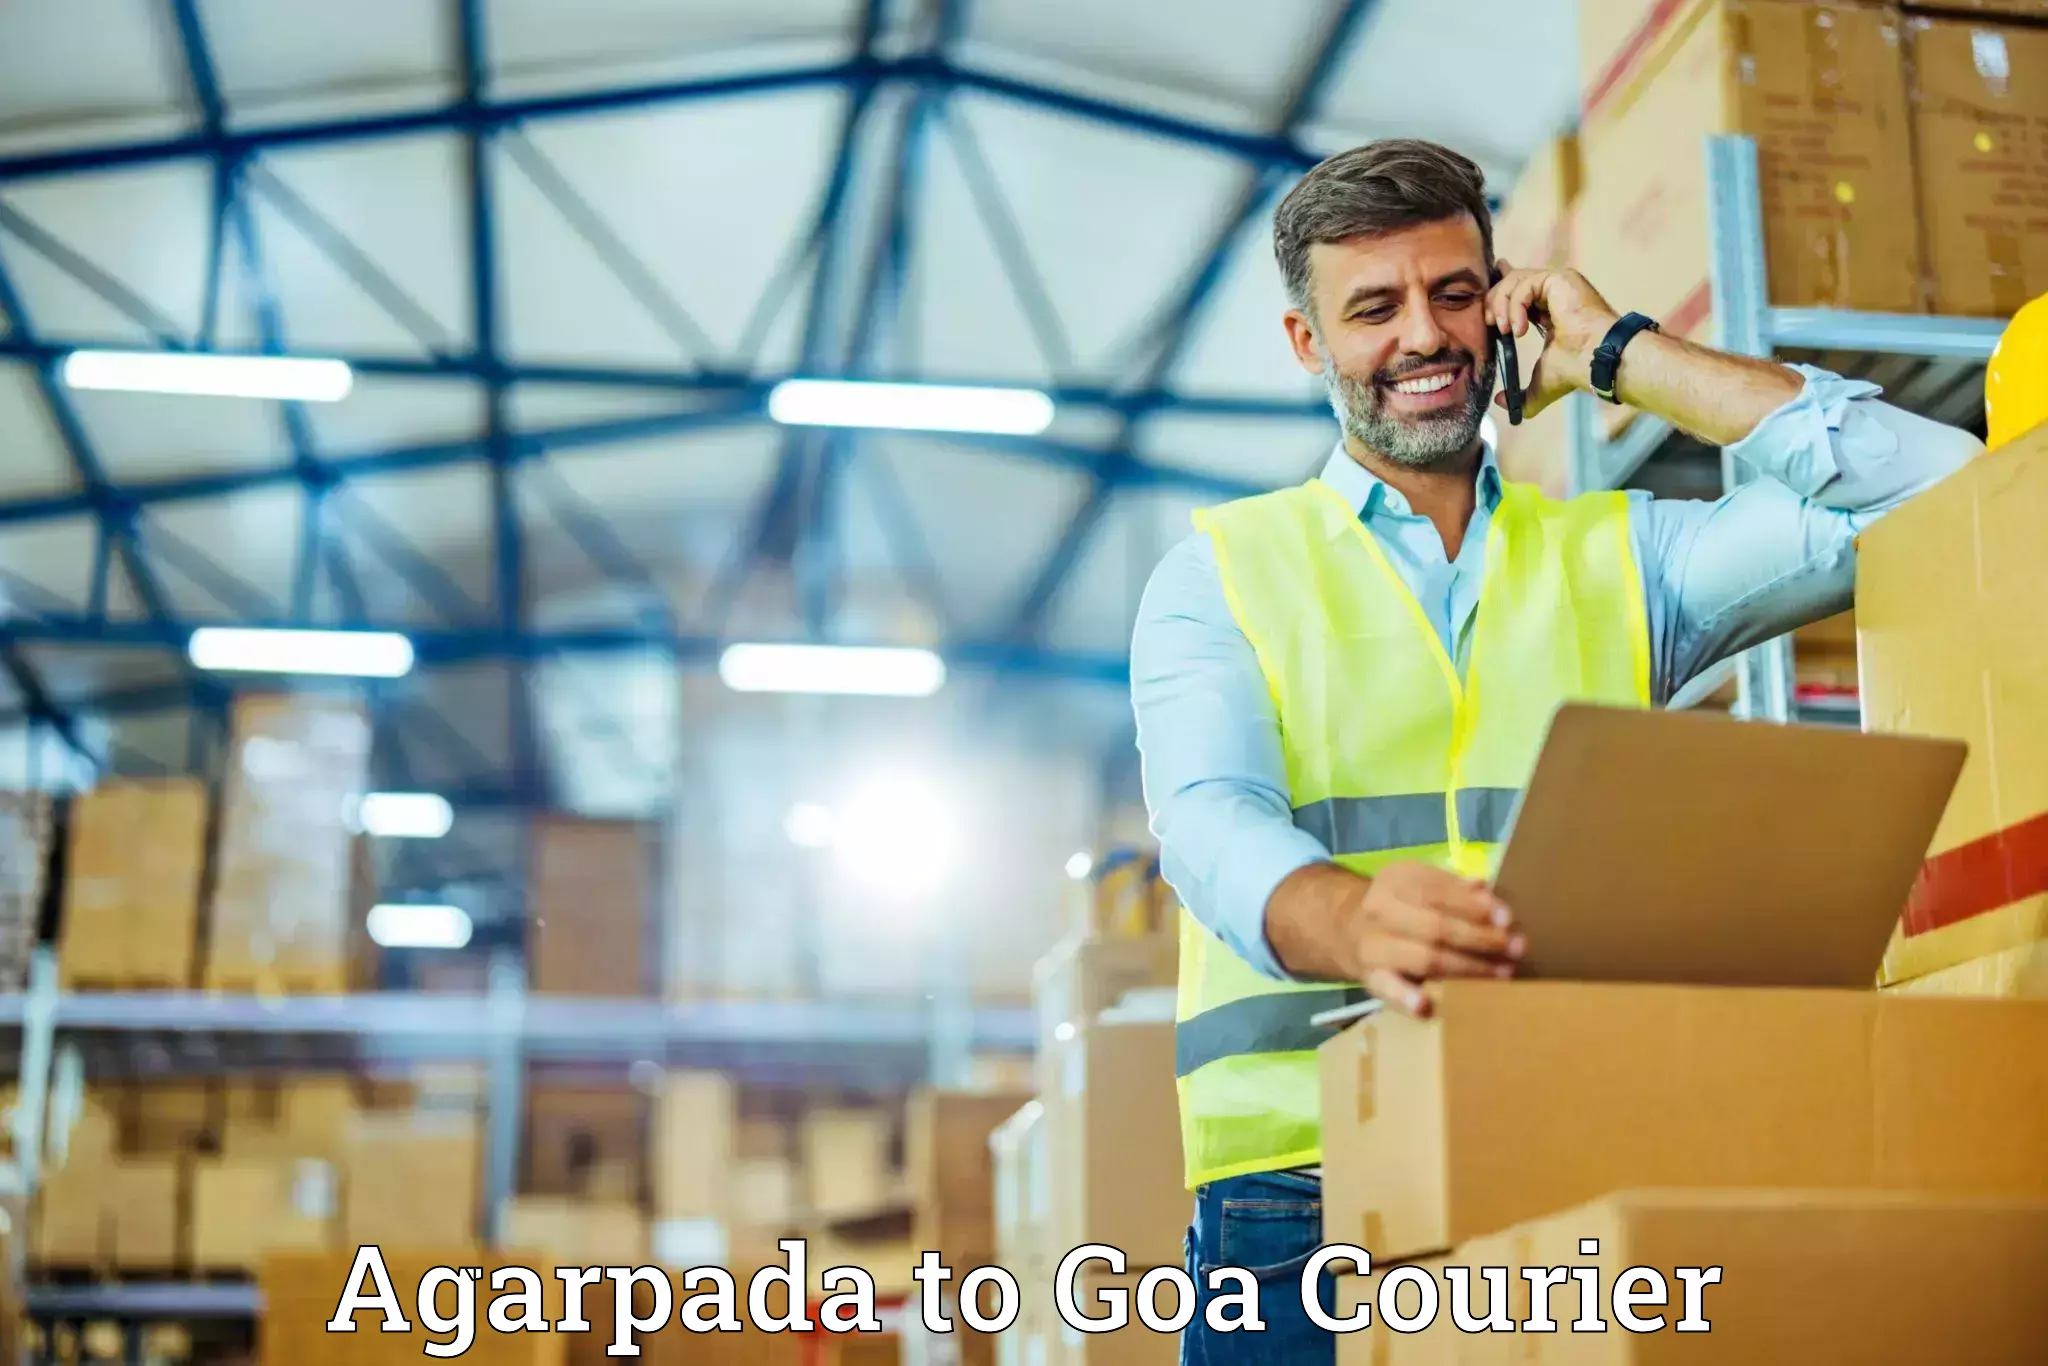 Furniture transport company Agarpada to Goa